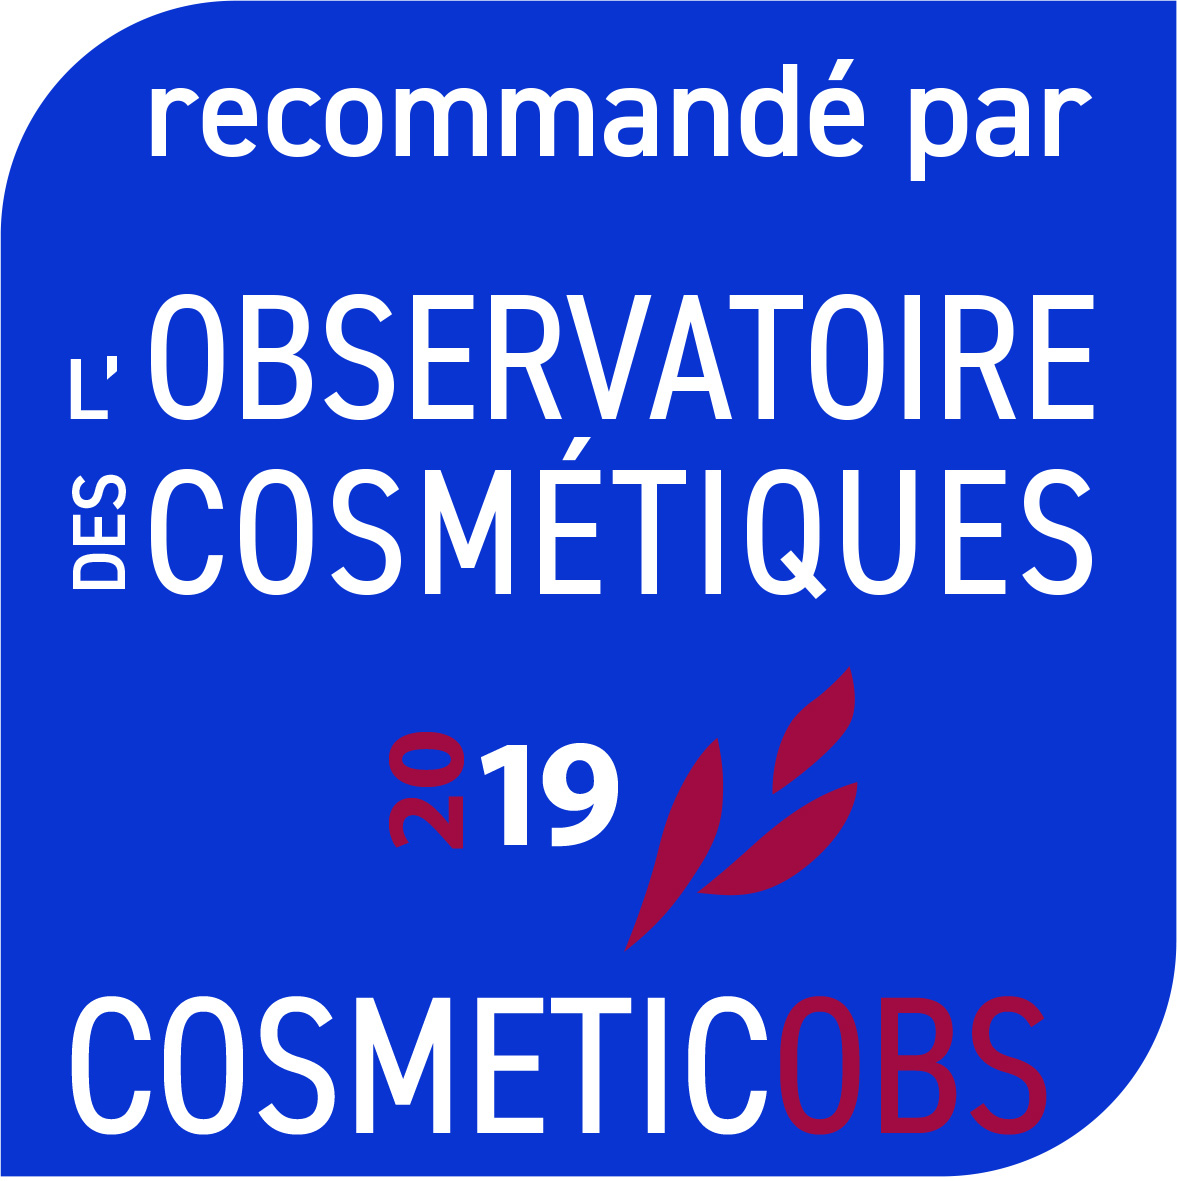 La mousse nettoyante recommandée par l'observatoire des cosmétiques édition 2019